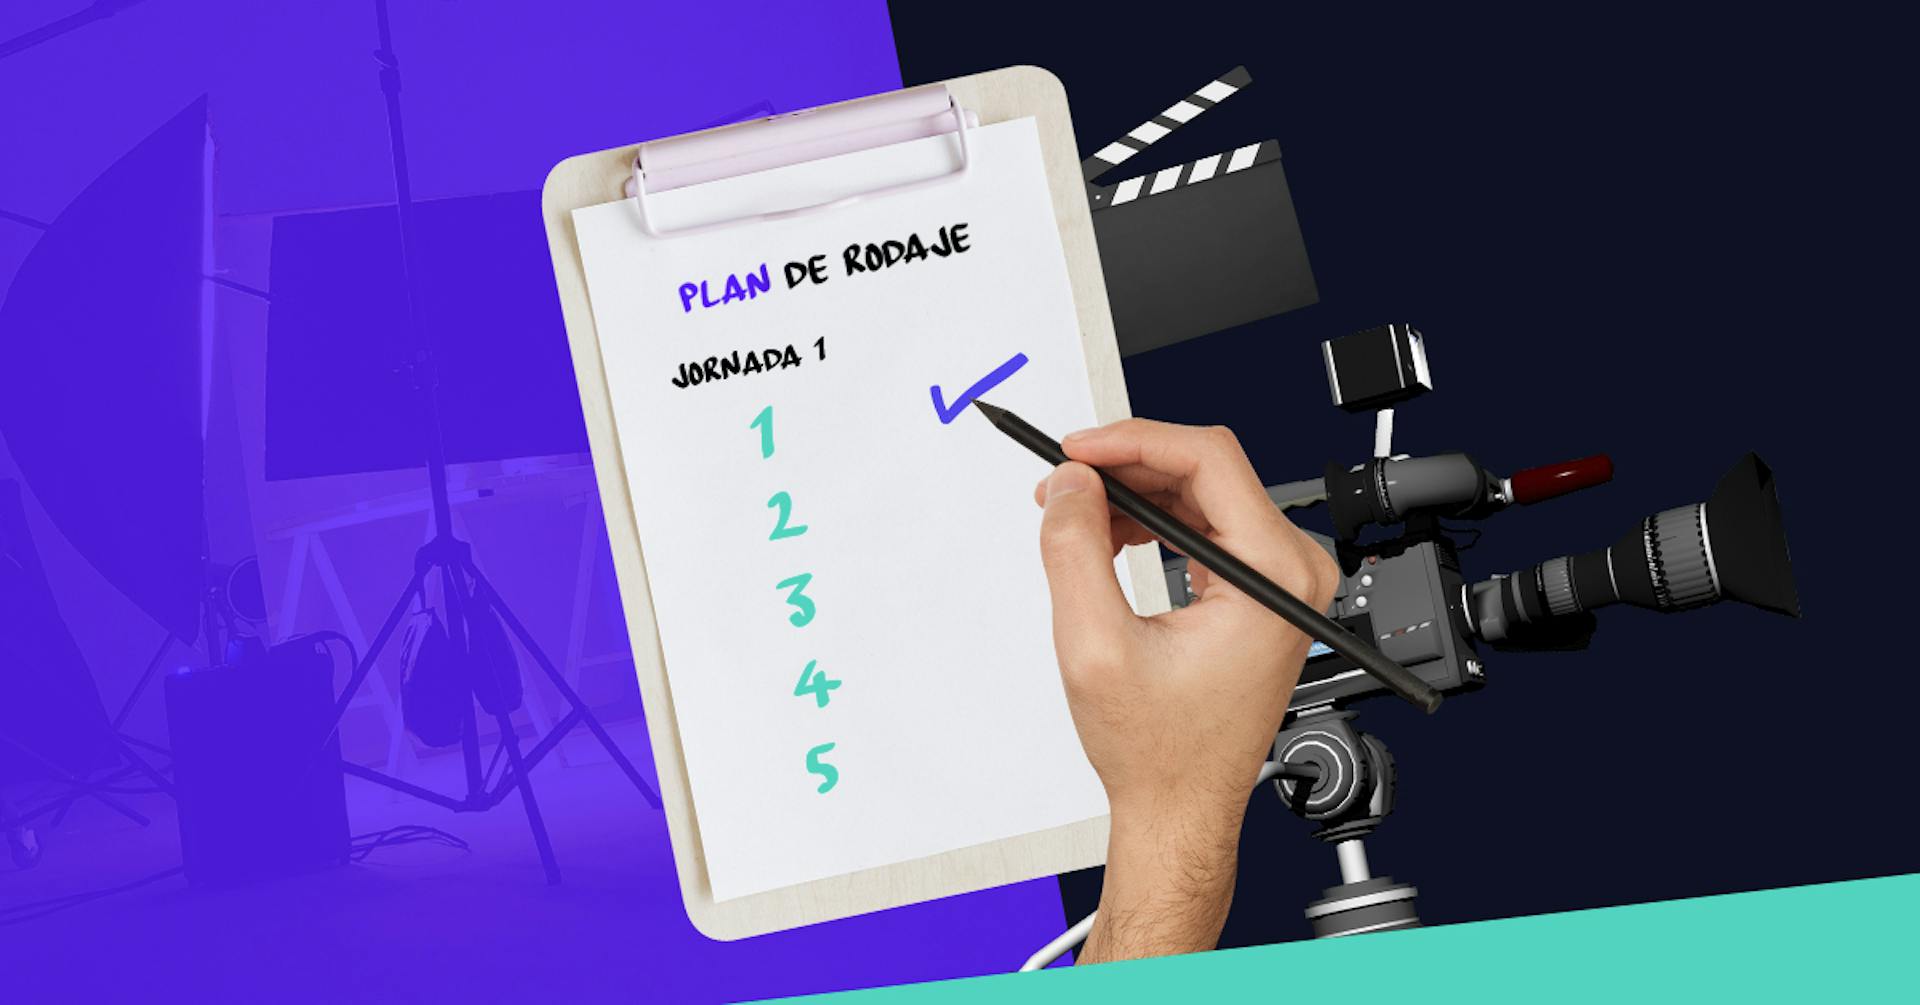 Aprende qué es un plan de rodaje y prepárate para grabar tu primera película